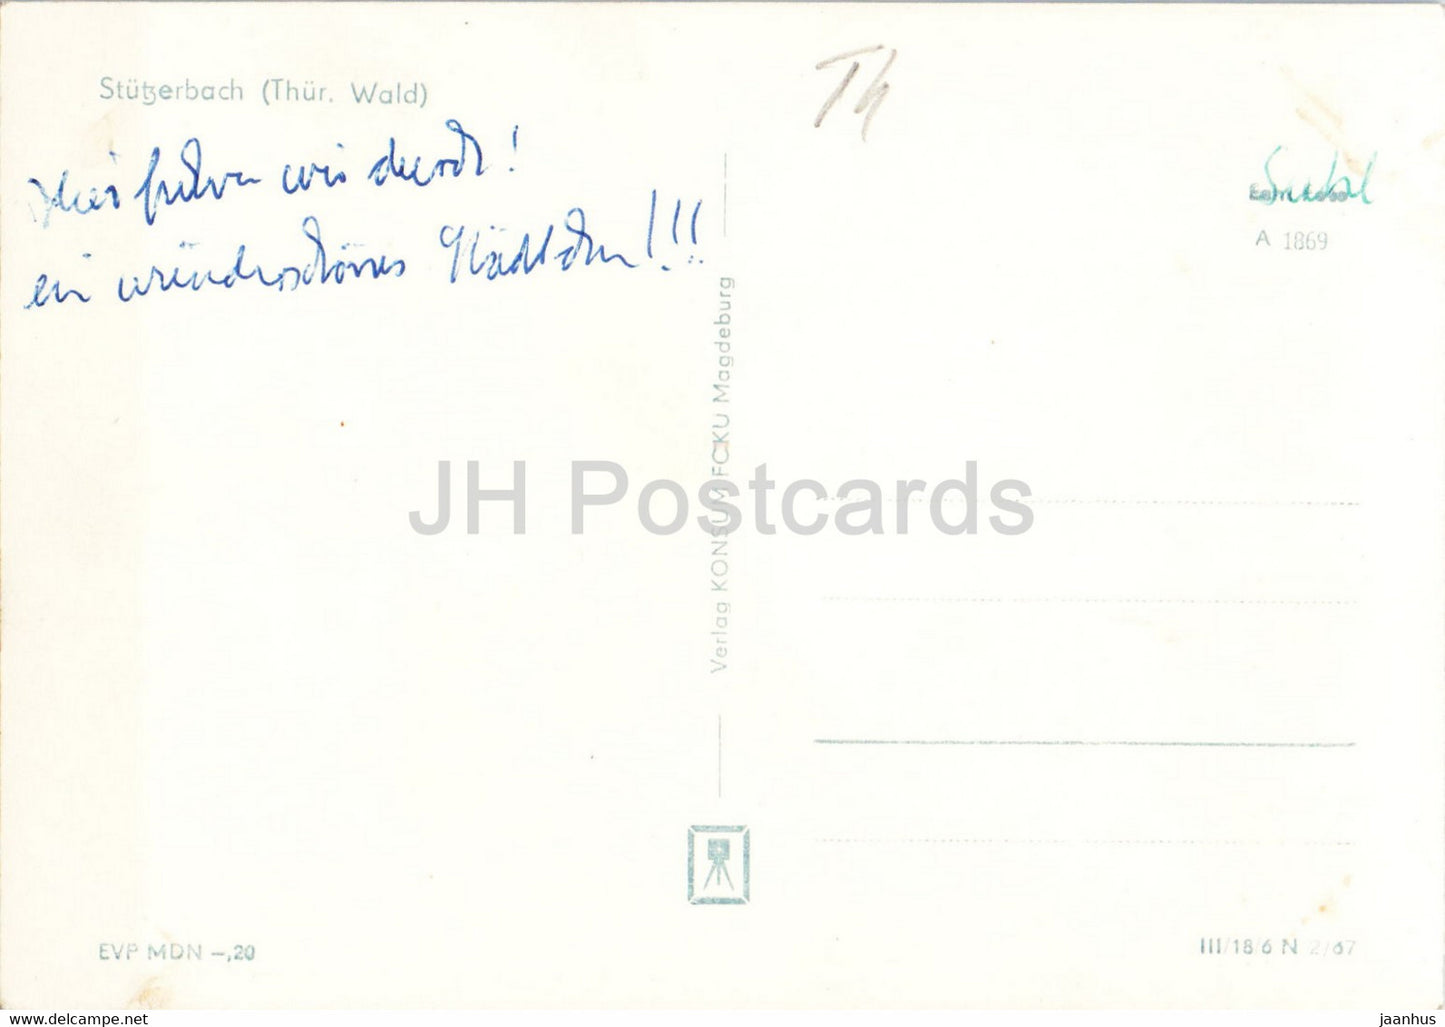 Stutzerbach - Thur Wald - carte postale ancienne - Allemagne DDR - utilisé